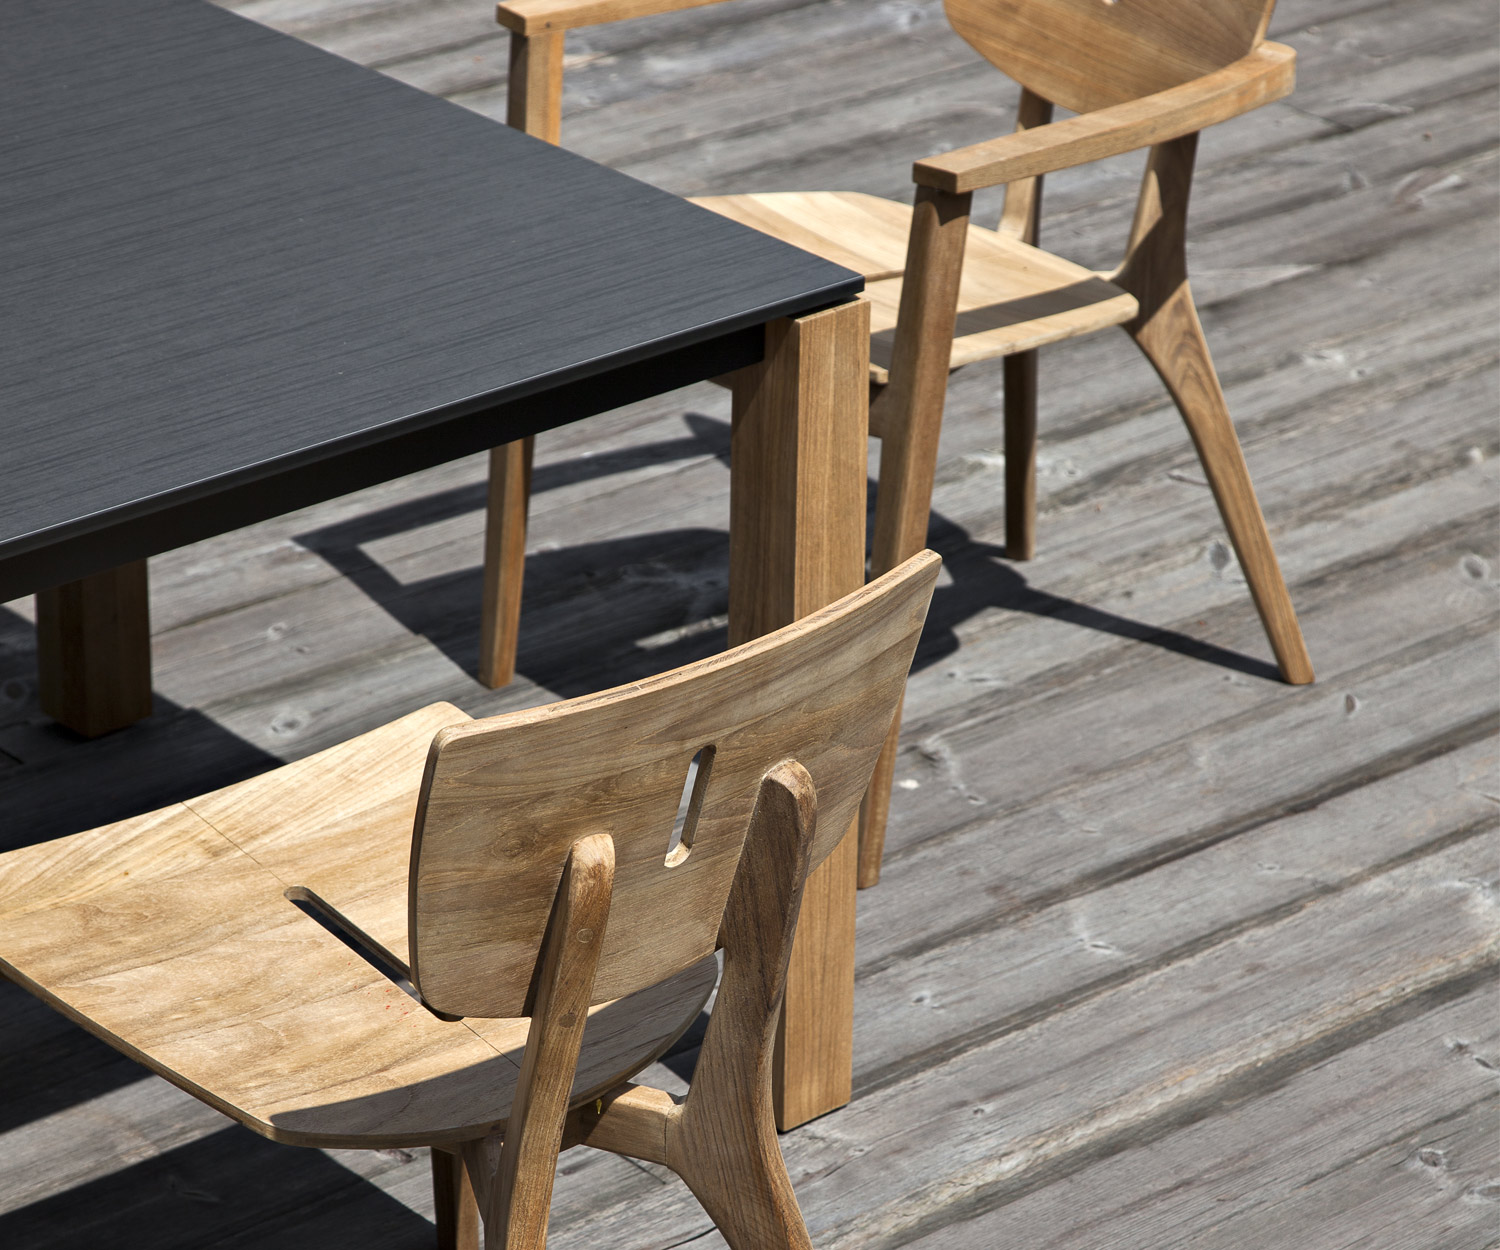 Oasiq Machar Design teak garden table with Copenhagen and Diuna chairs